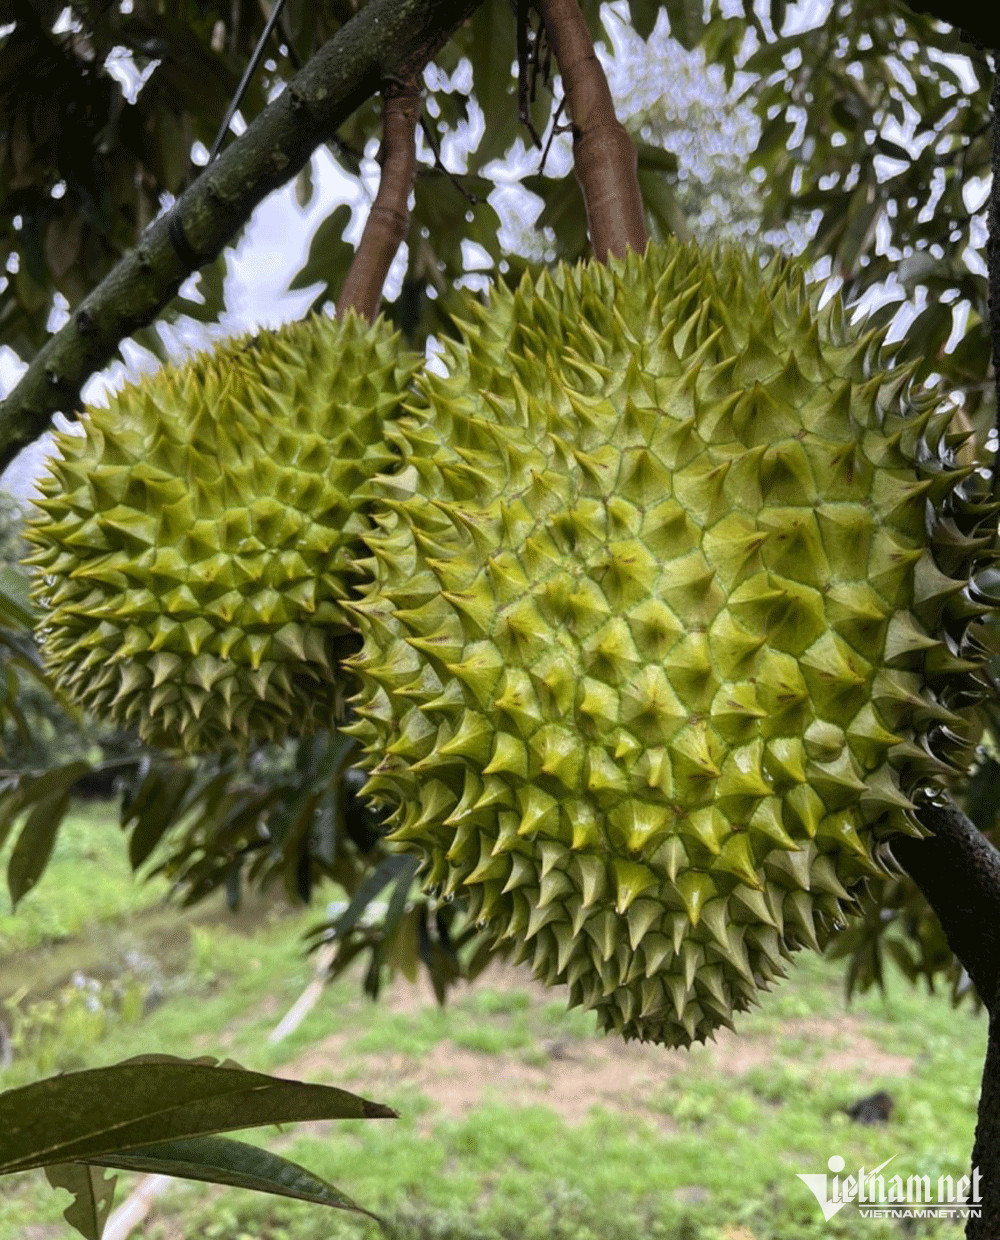 Trở lại vị thế ‘vua trái cây’, cơm sầu riêng giá gần 500 nghìn/kg - Ảnh 2.